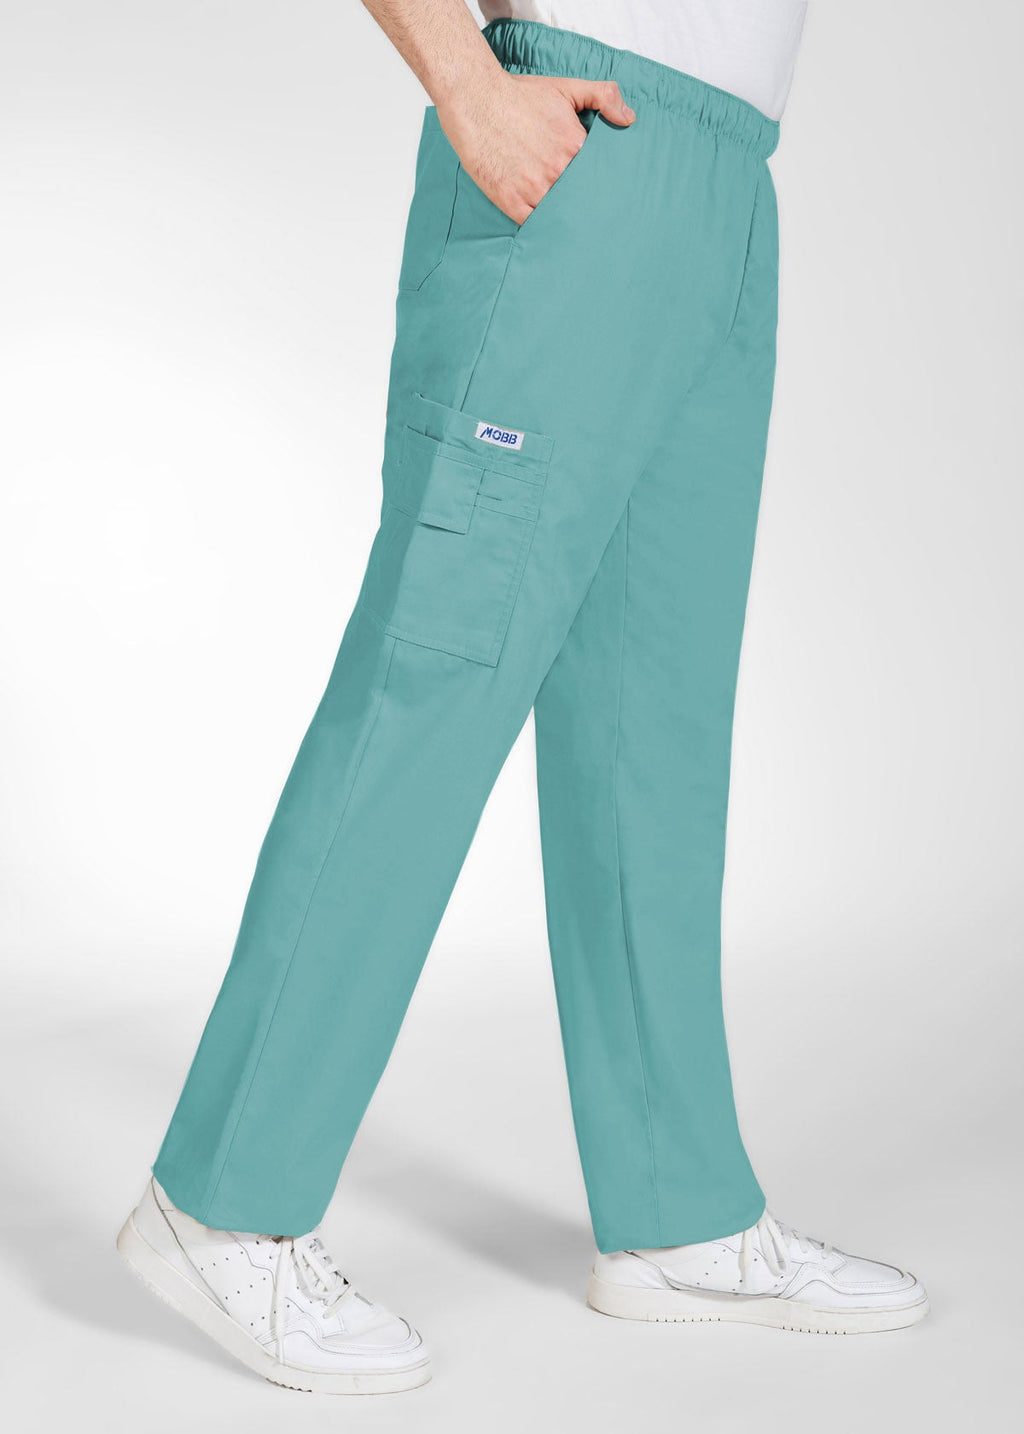 PerforMAX Unisex Elastic Waist Scrub Pants Size XXS  5XL